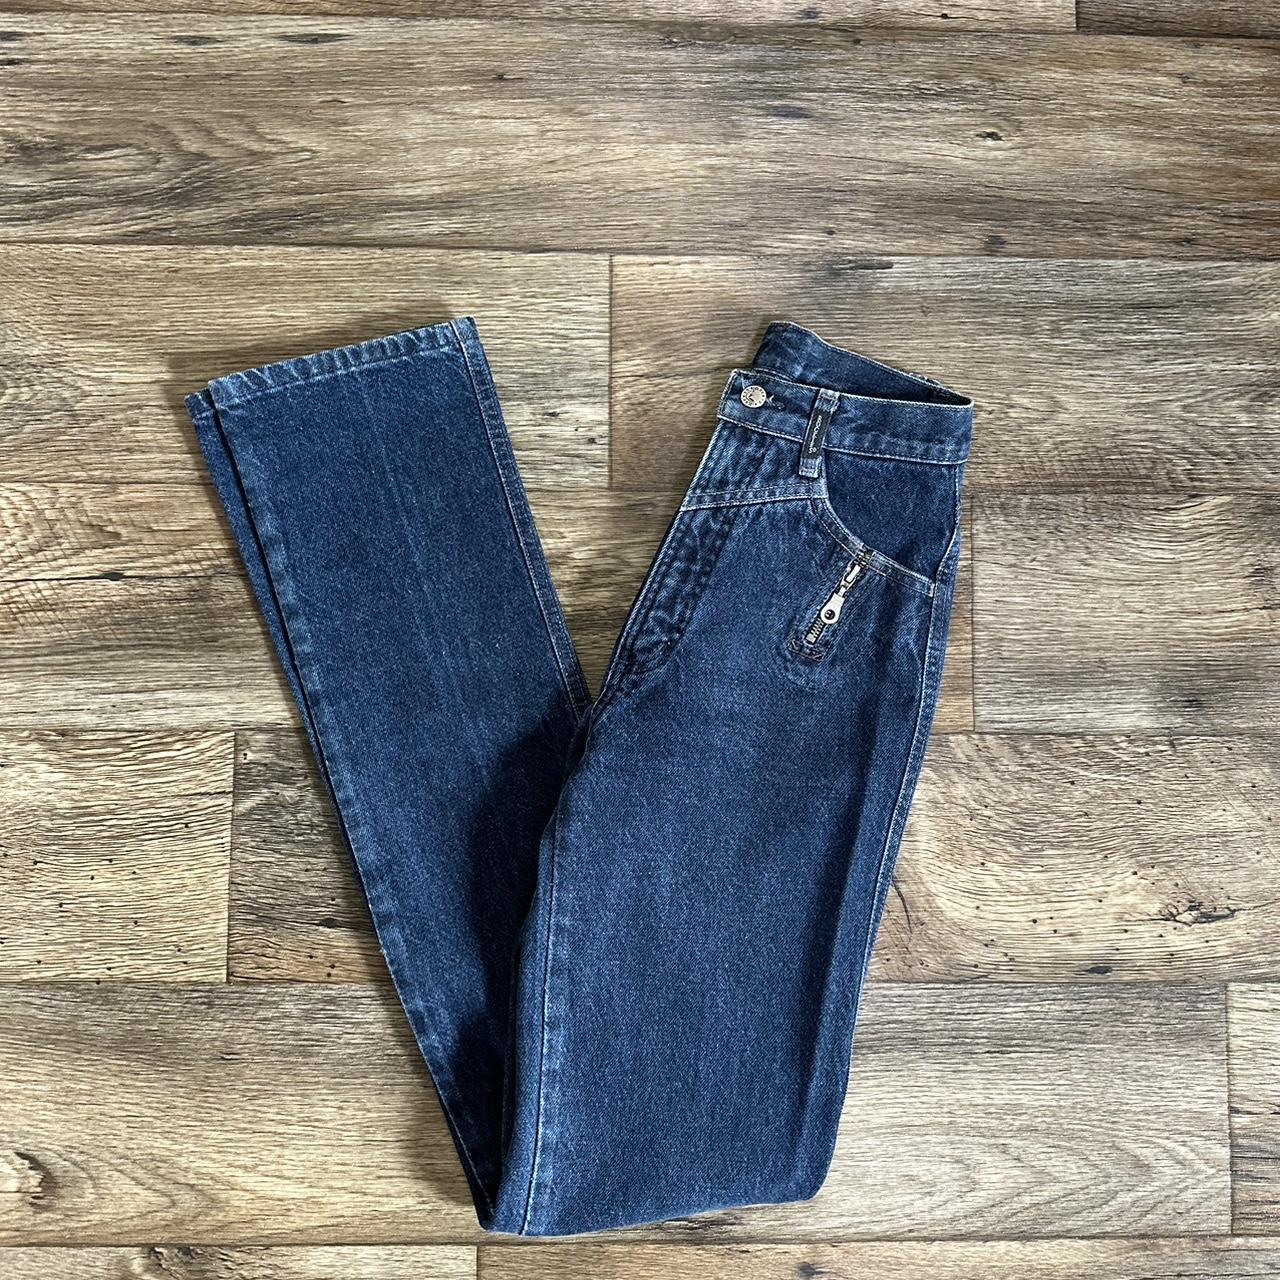 90s Western Rockies Jeans. Zipper detail by pockets.